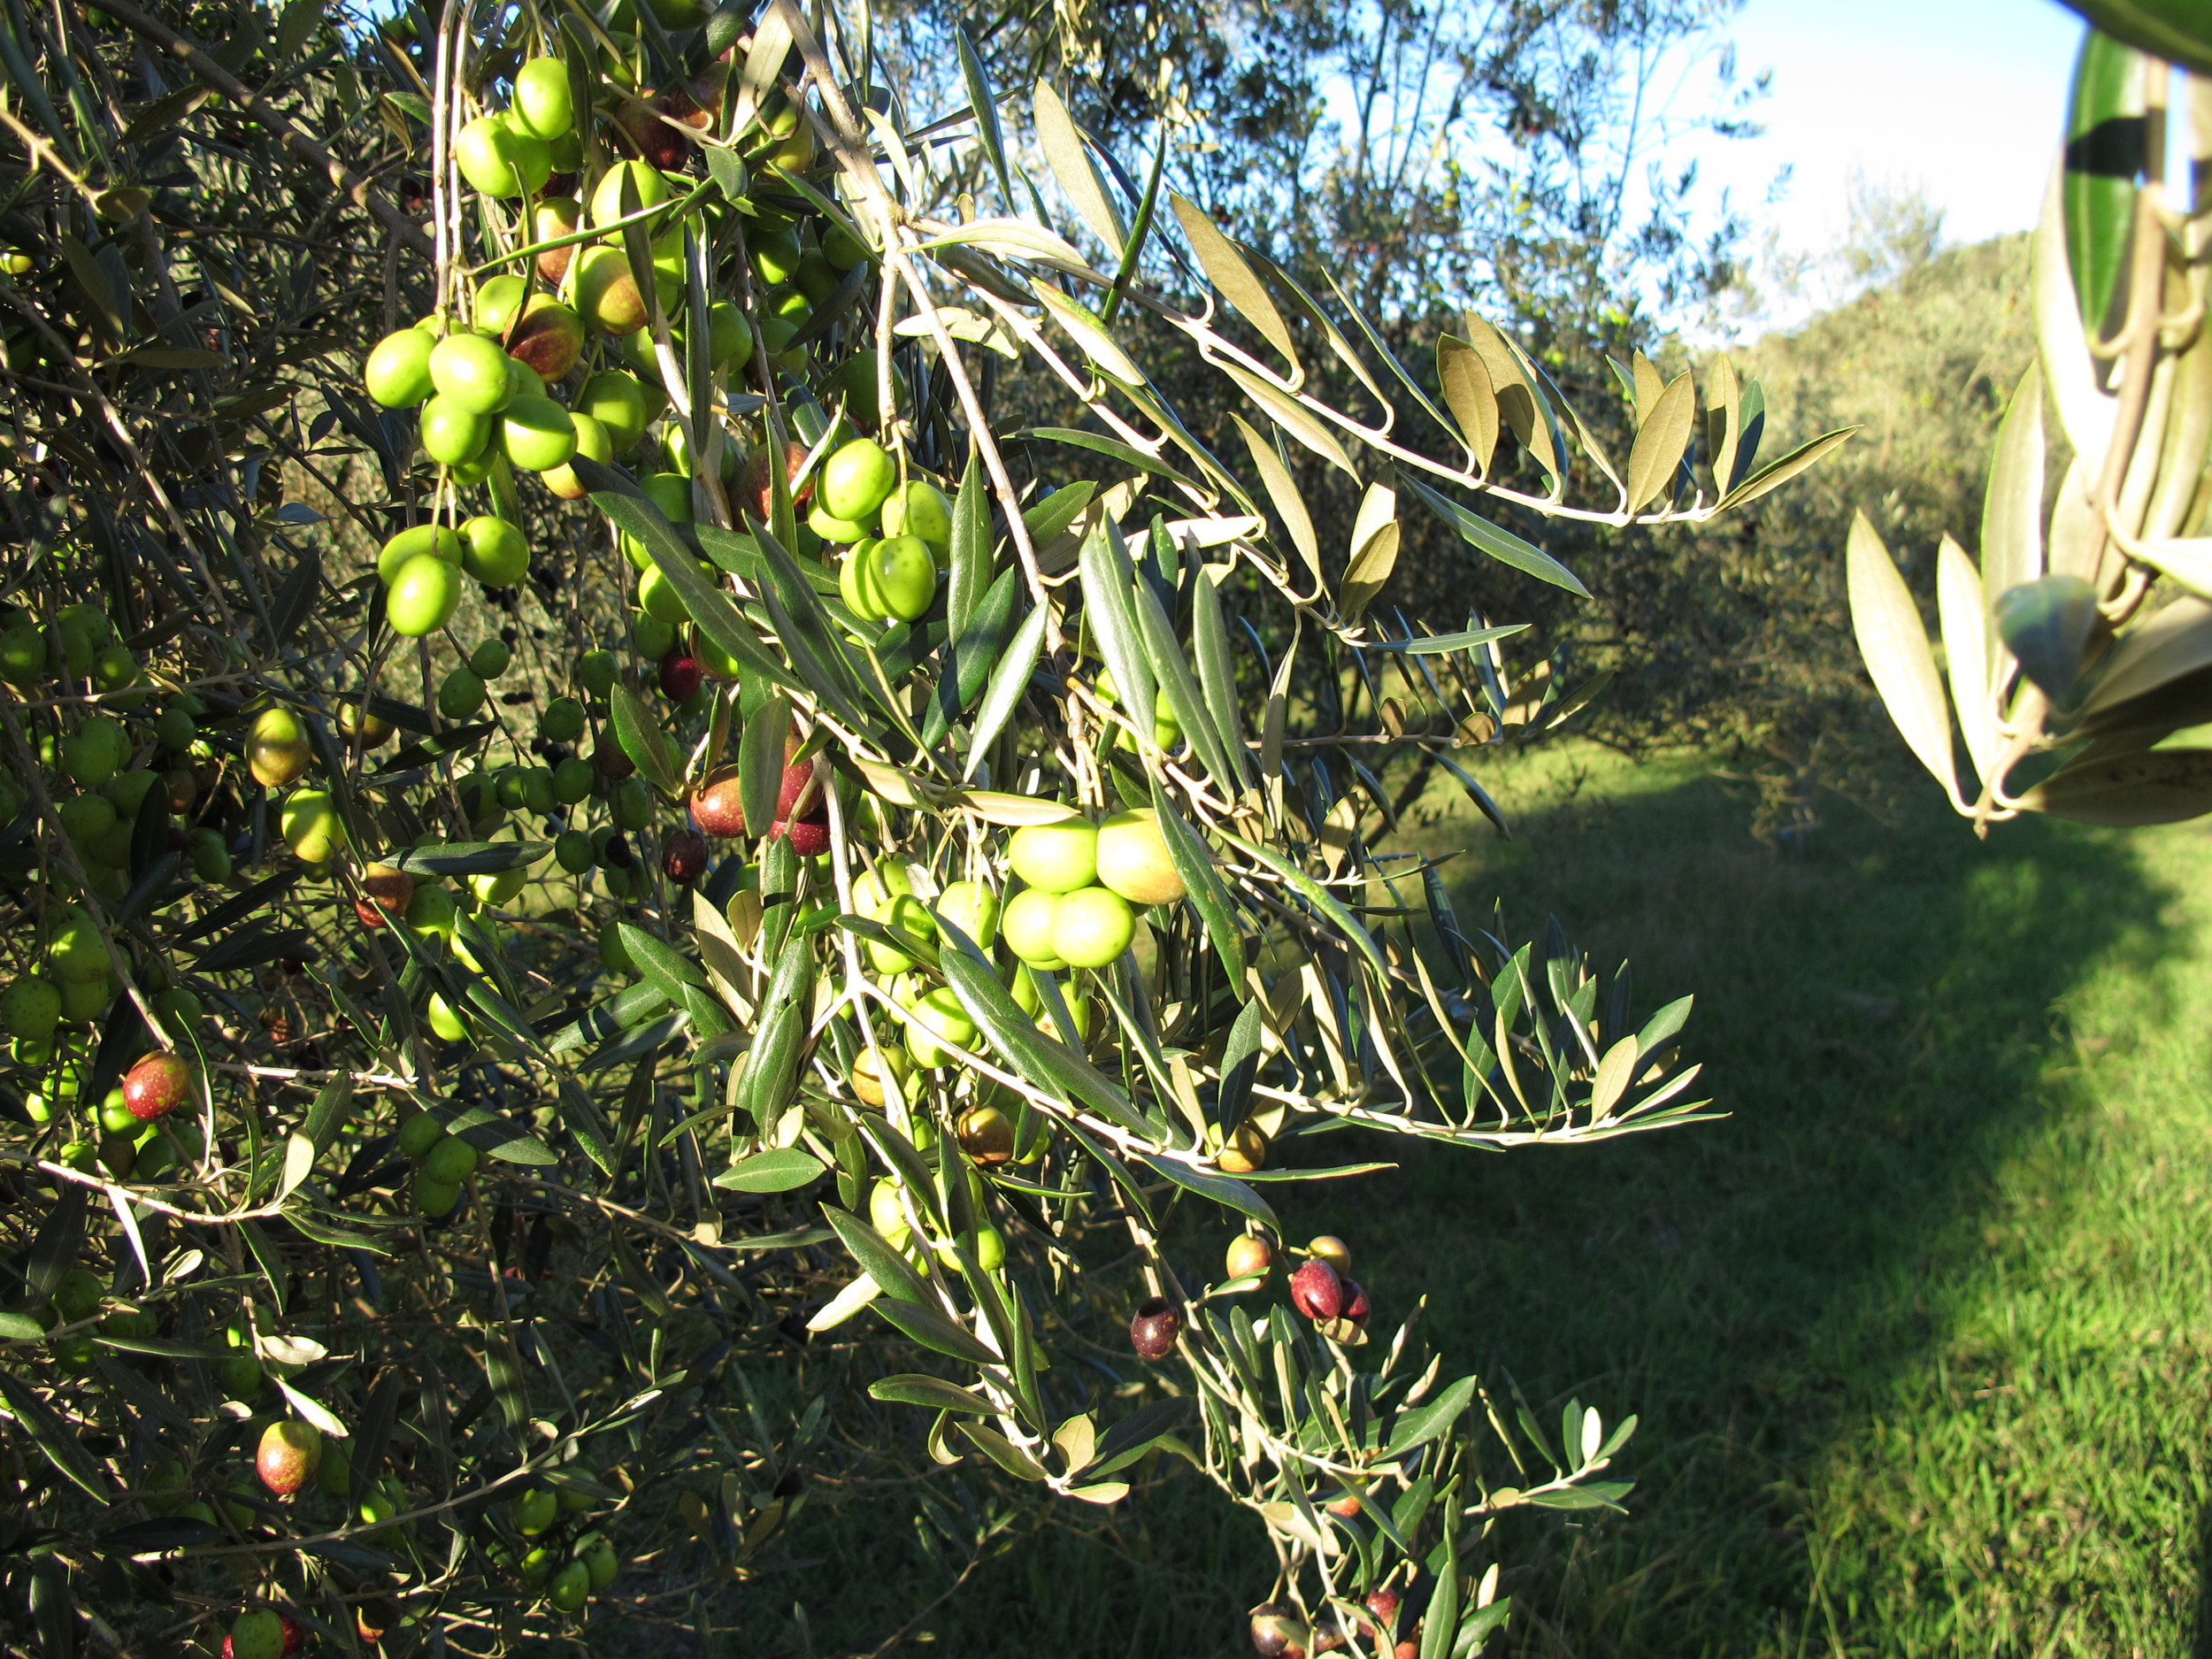 Olivesintree.JPG